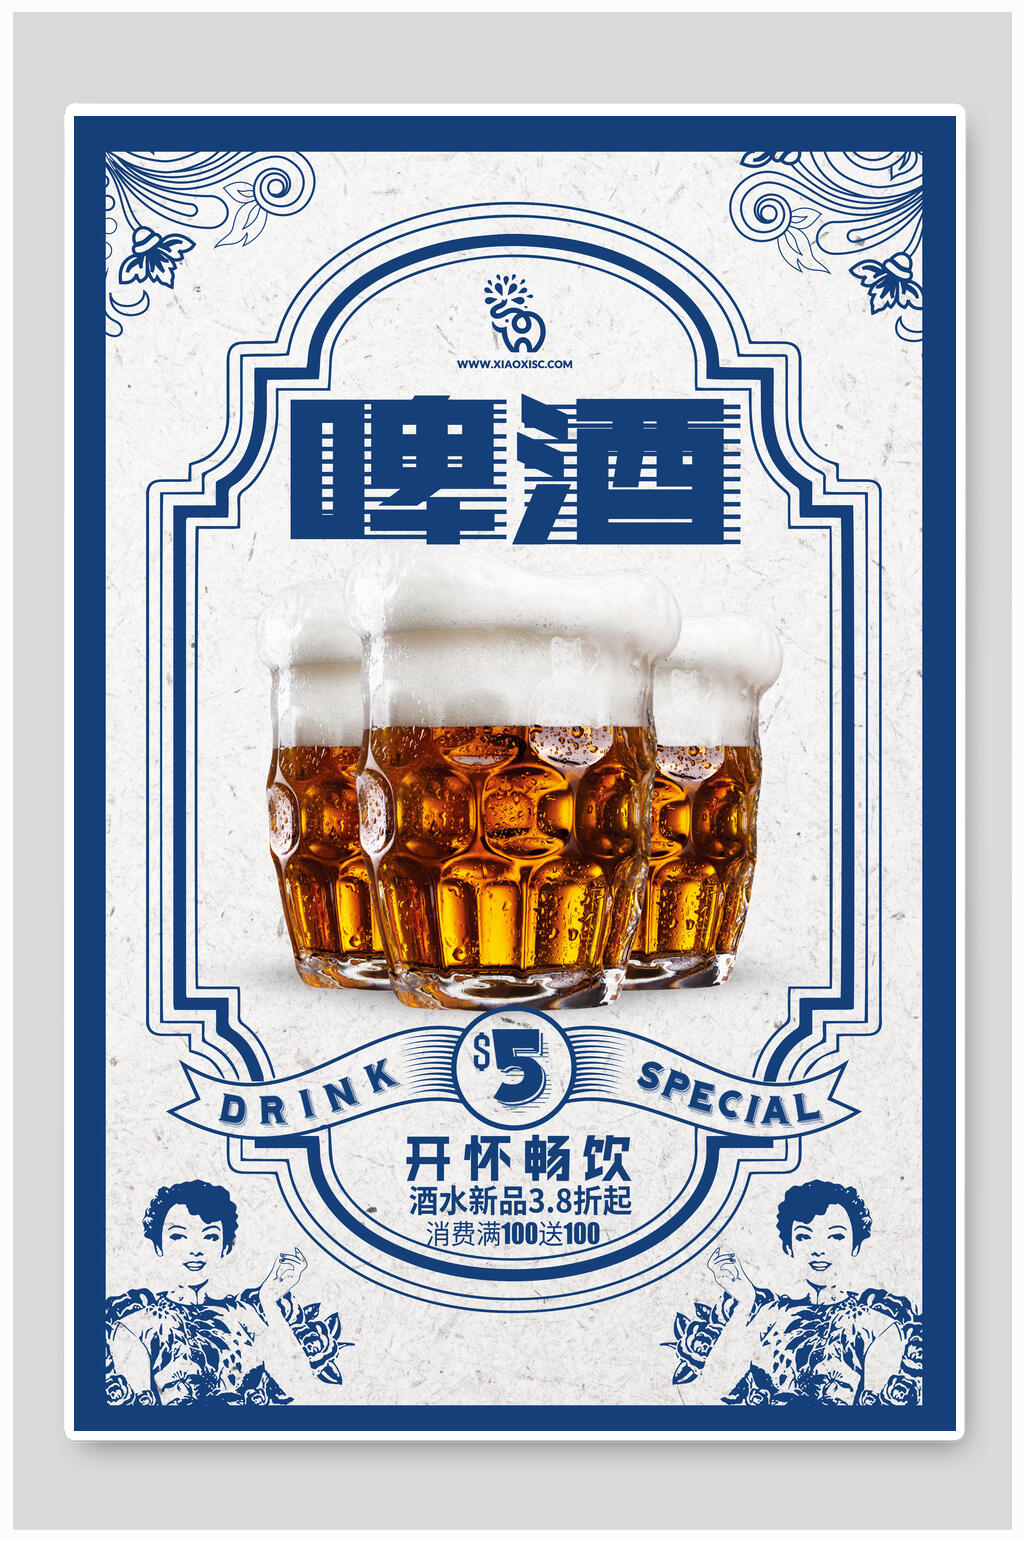 餐饮美食啤酒烧烤活动海报立即下载立即下载啤酒节电商活动促销海报